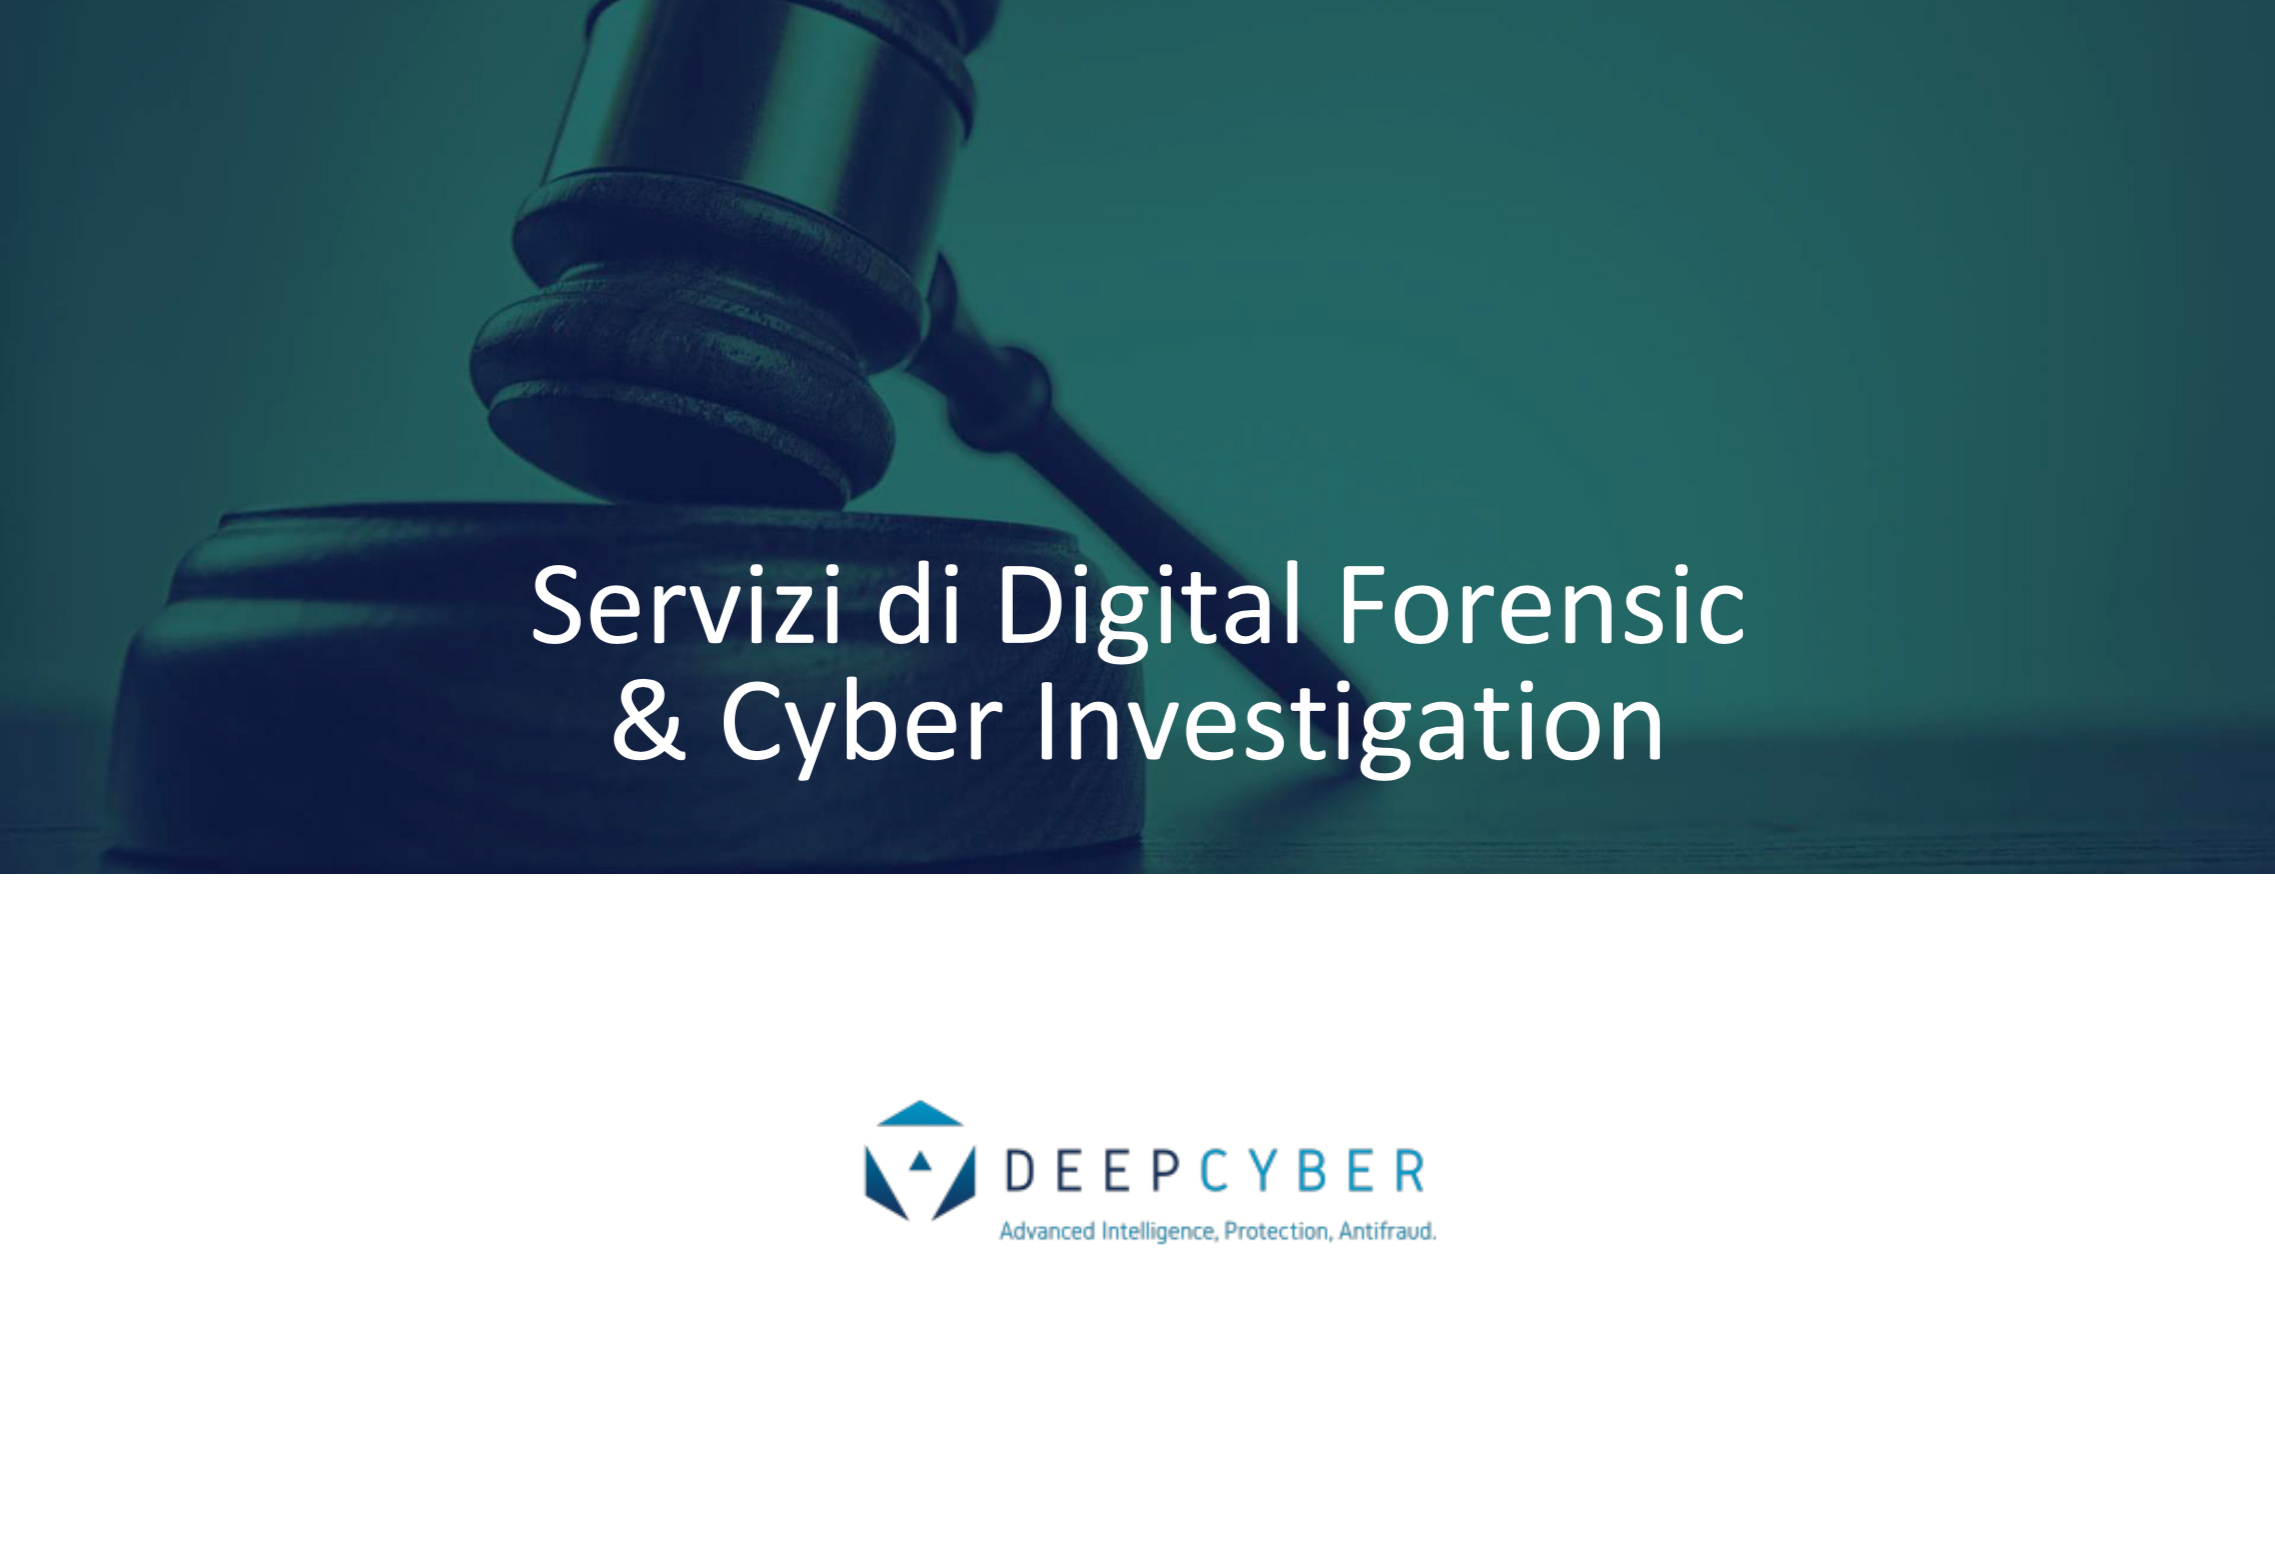 Servizi di Digital Forensic & Cyber Investigation